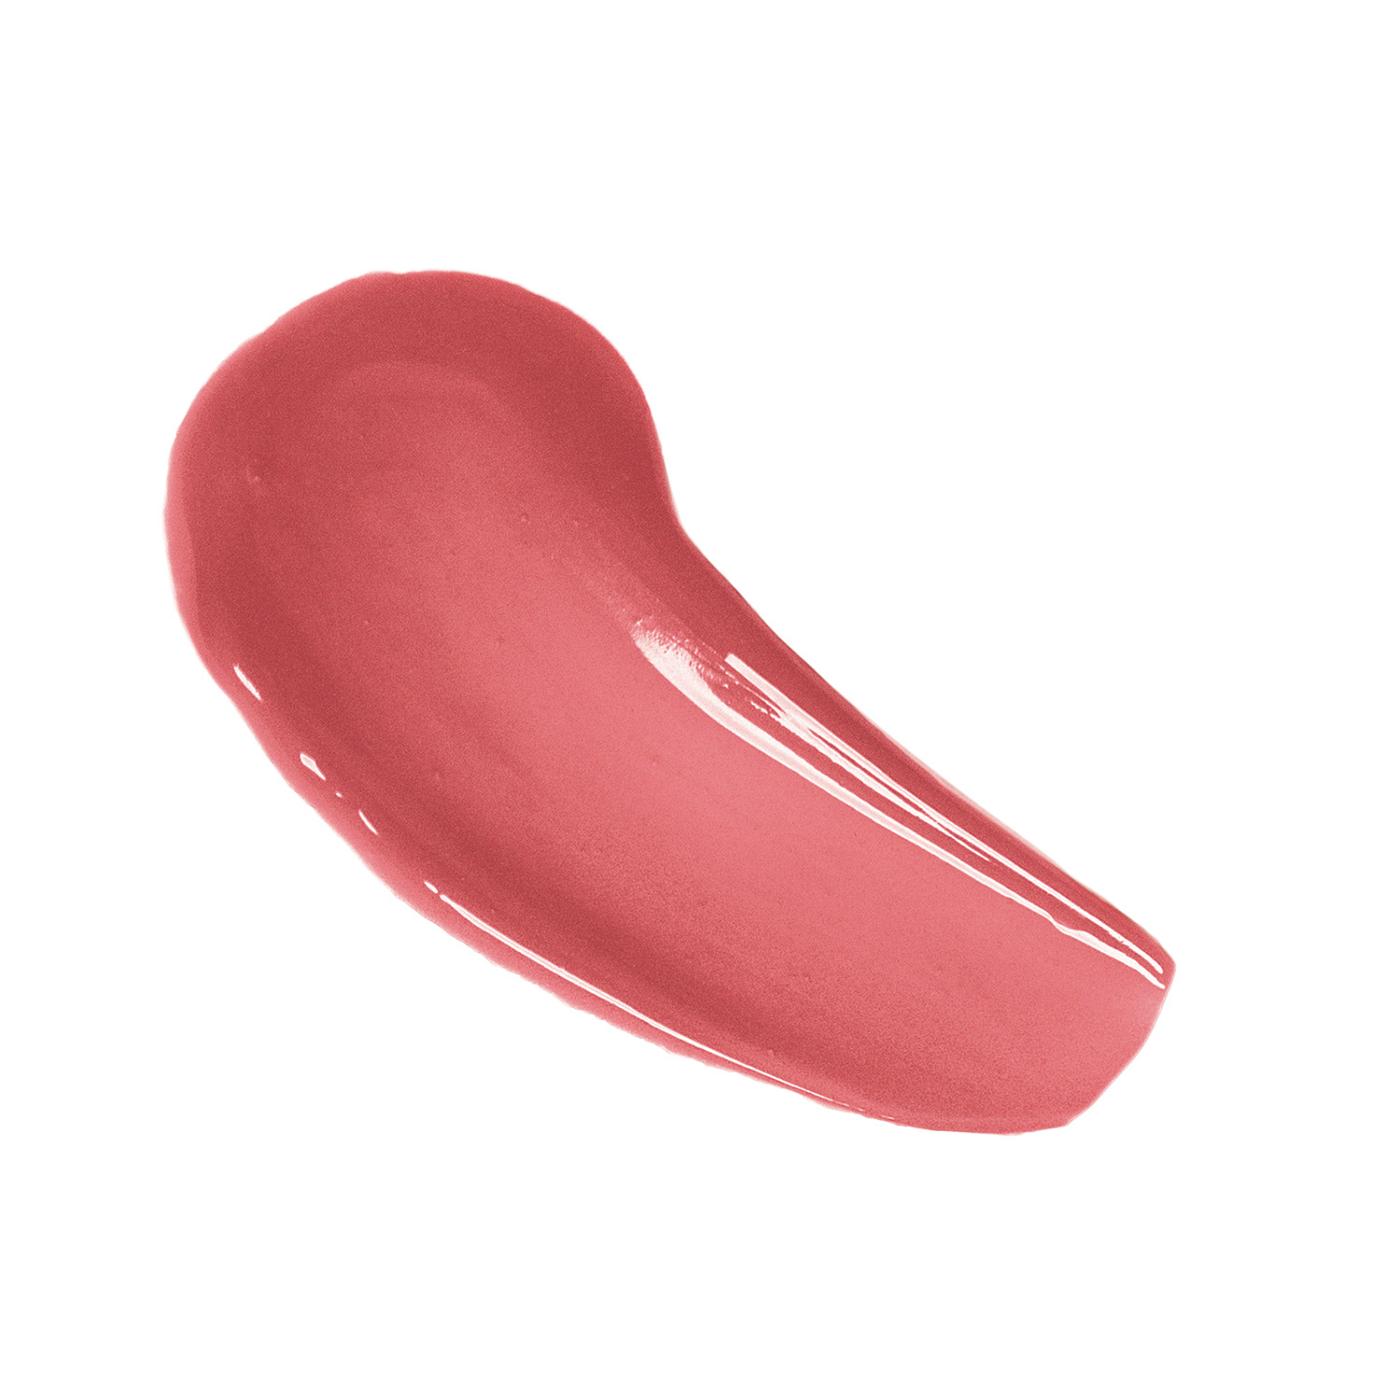 L'Oréal Paris Infallible 8 Hour Pro Lip Gloss - Bloom; image 2 of 2